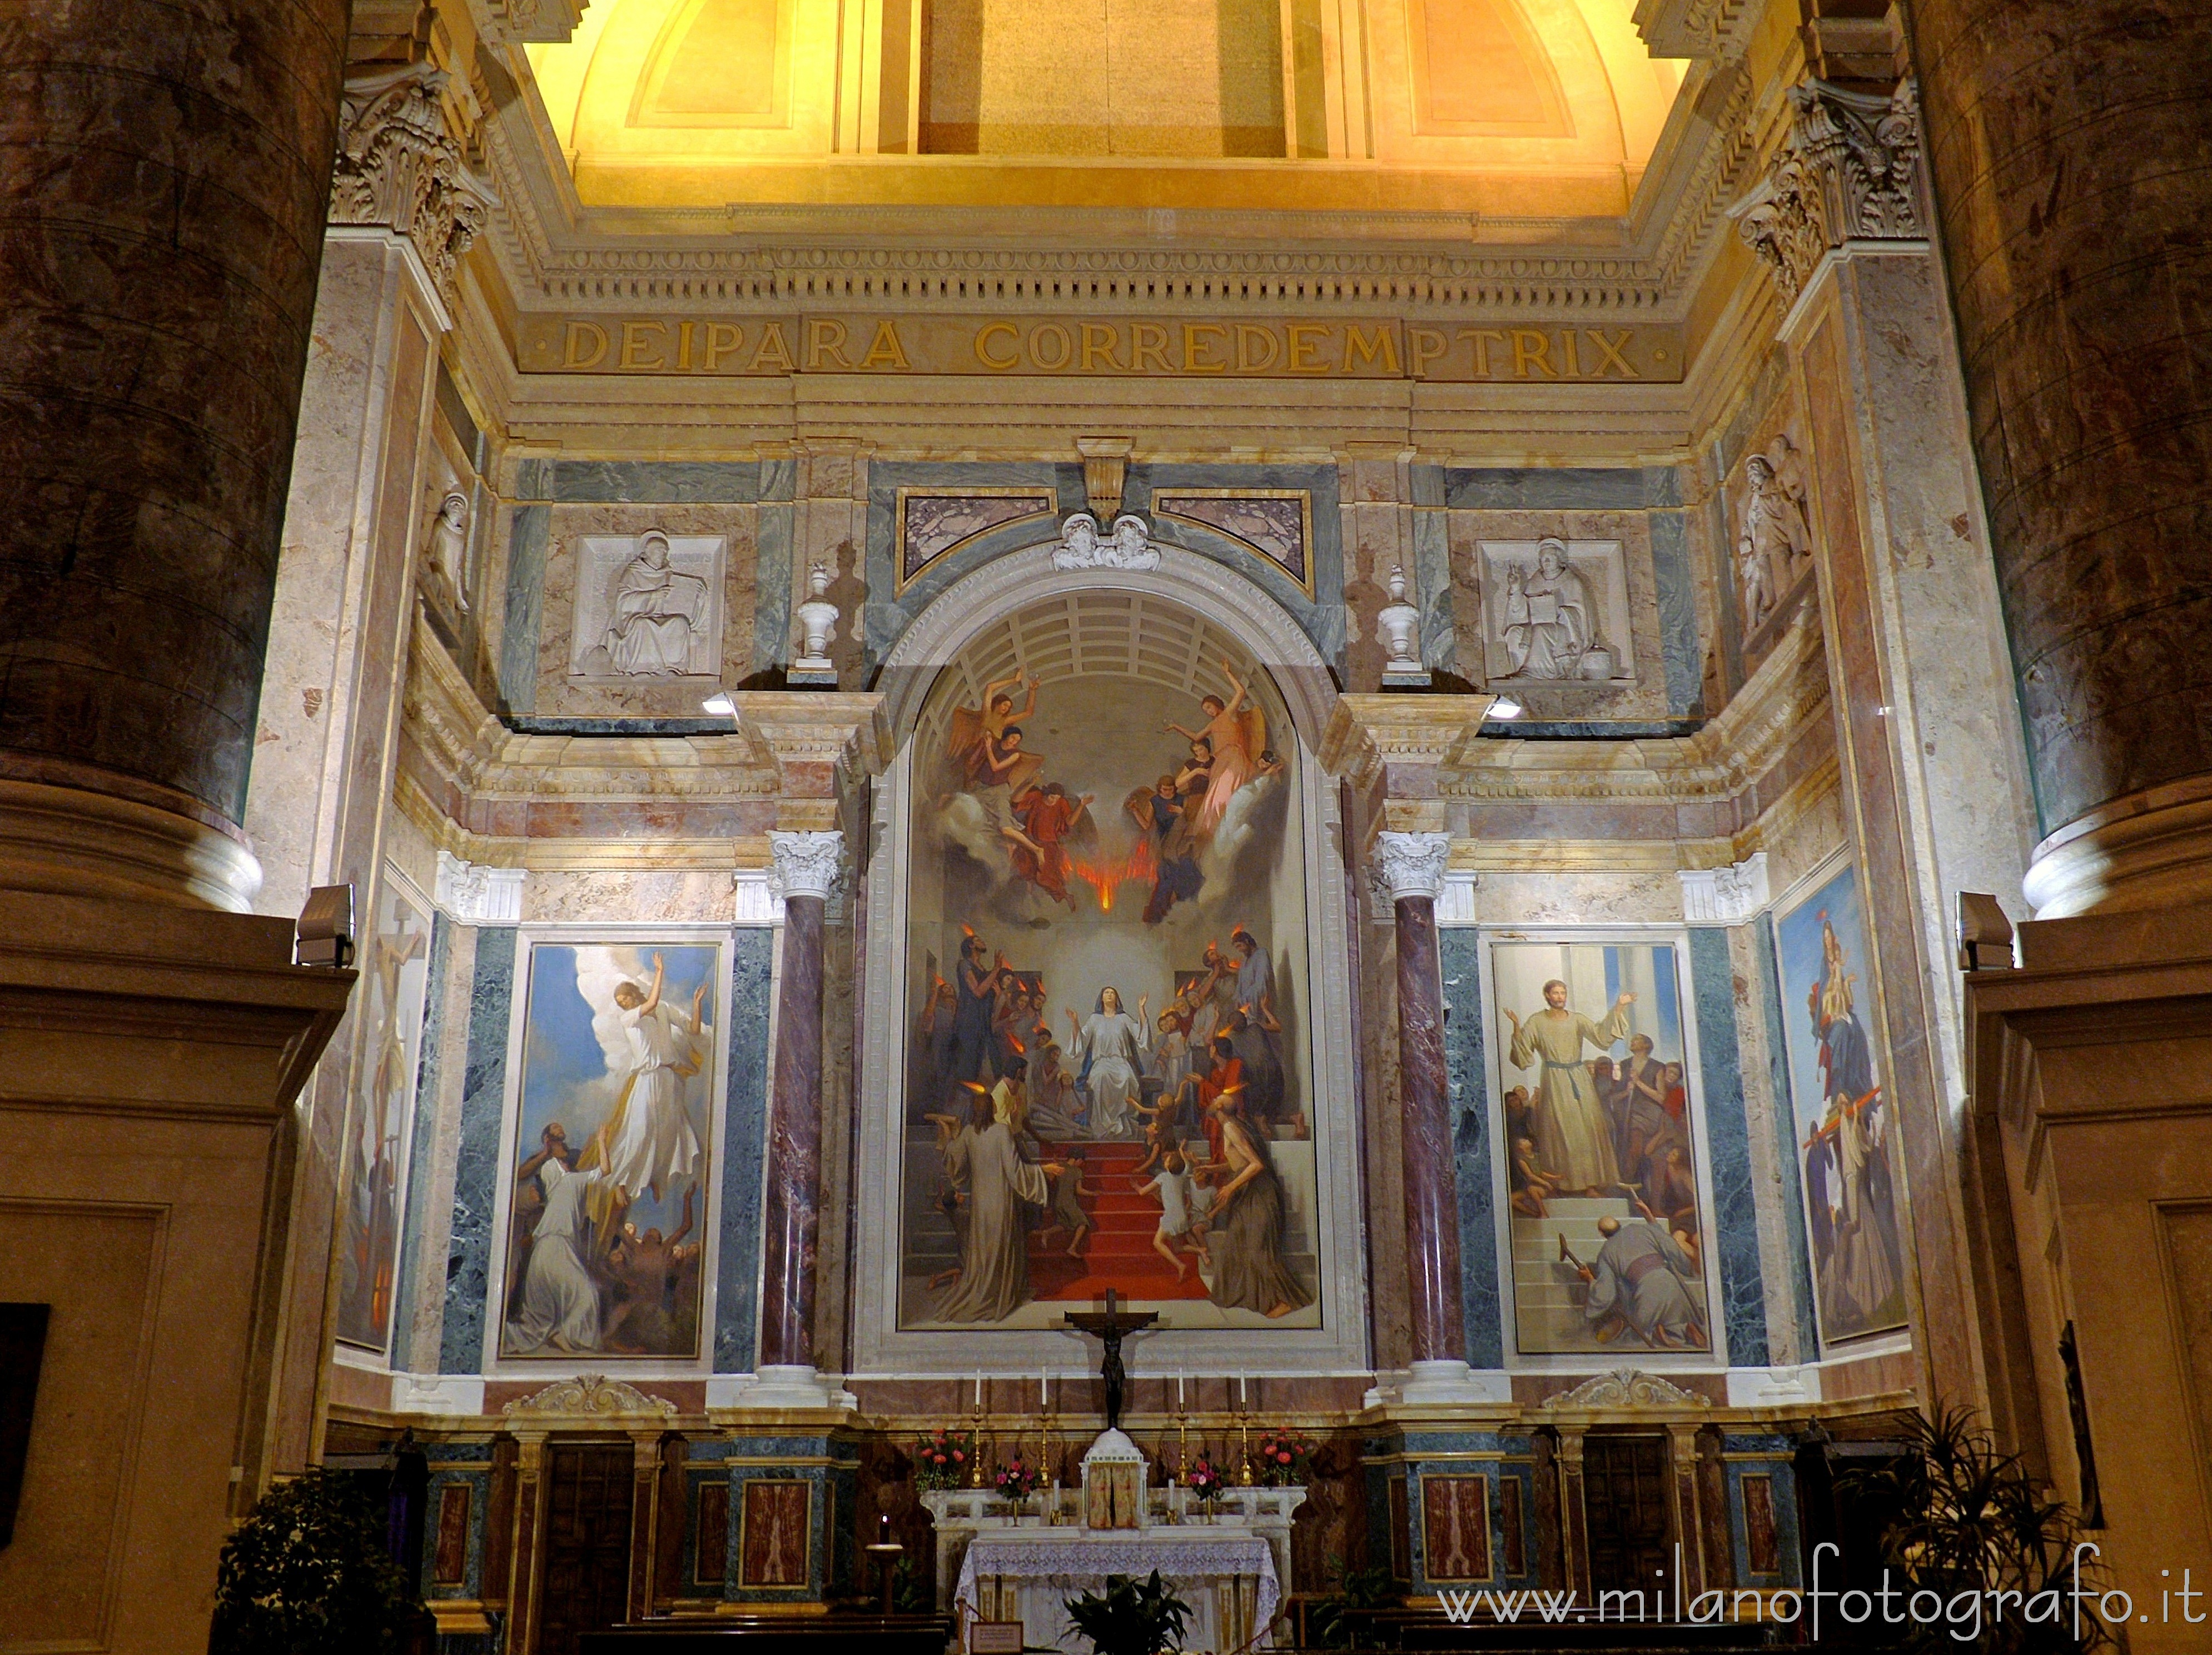 Biella (Italy): Lateral altar in the Upper Basilica of the Sanctuary of Oropa - Biella (Italy)